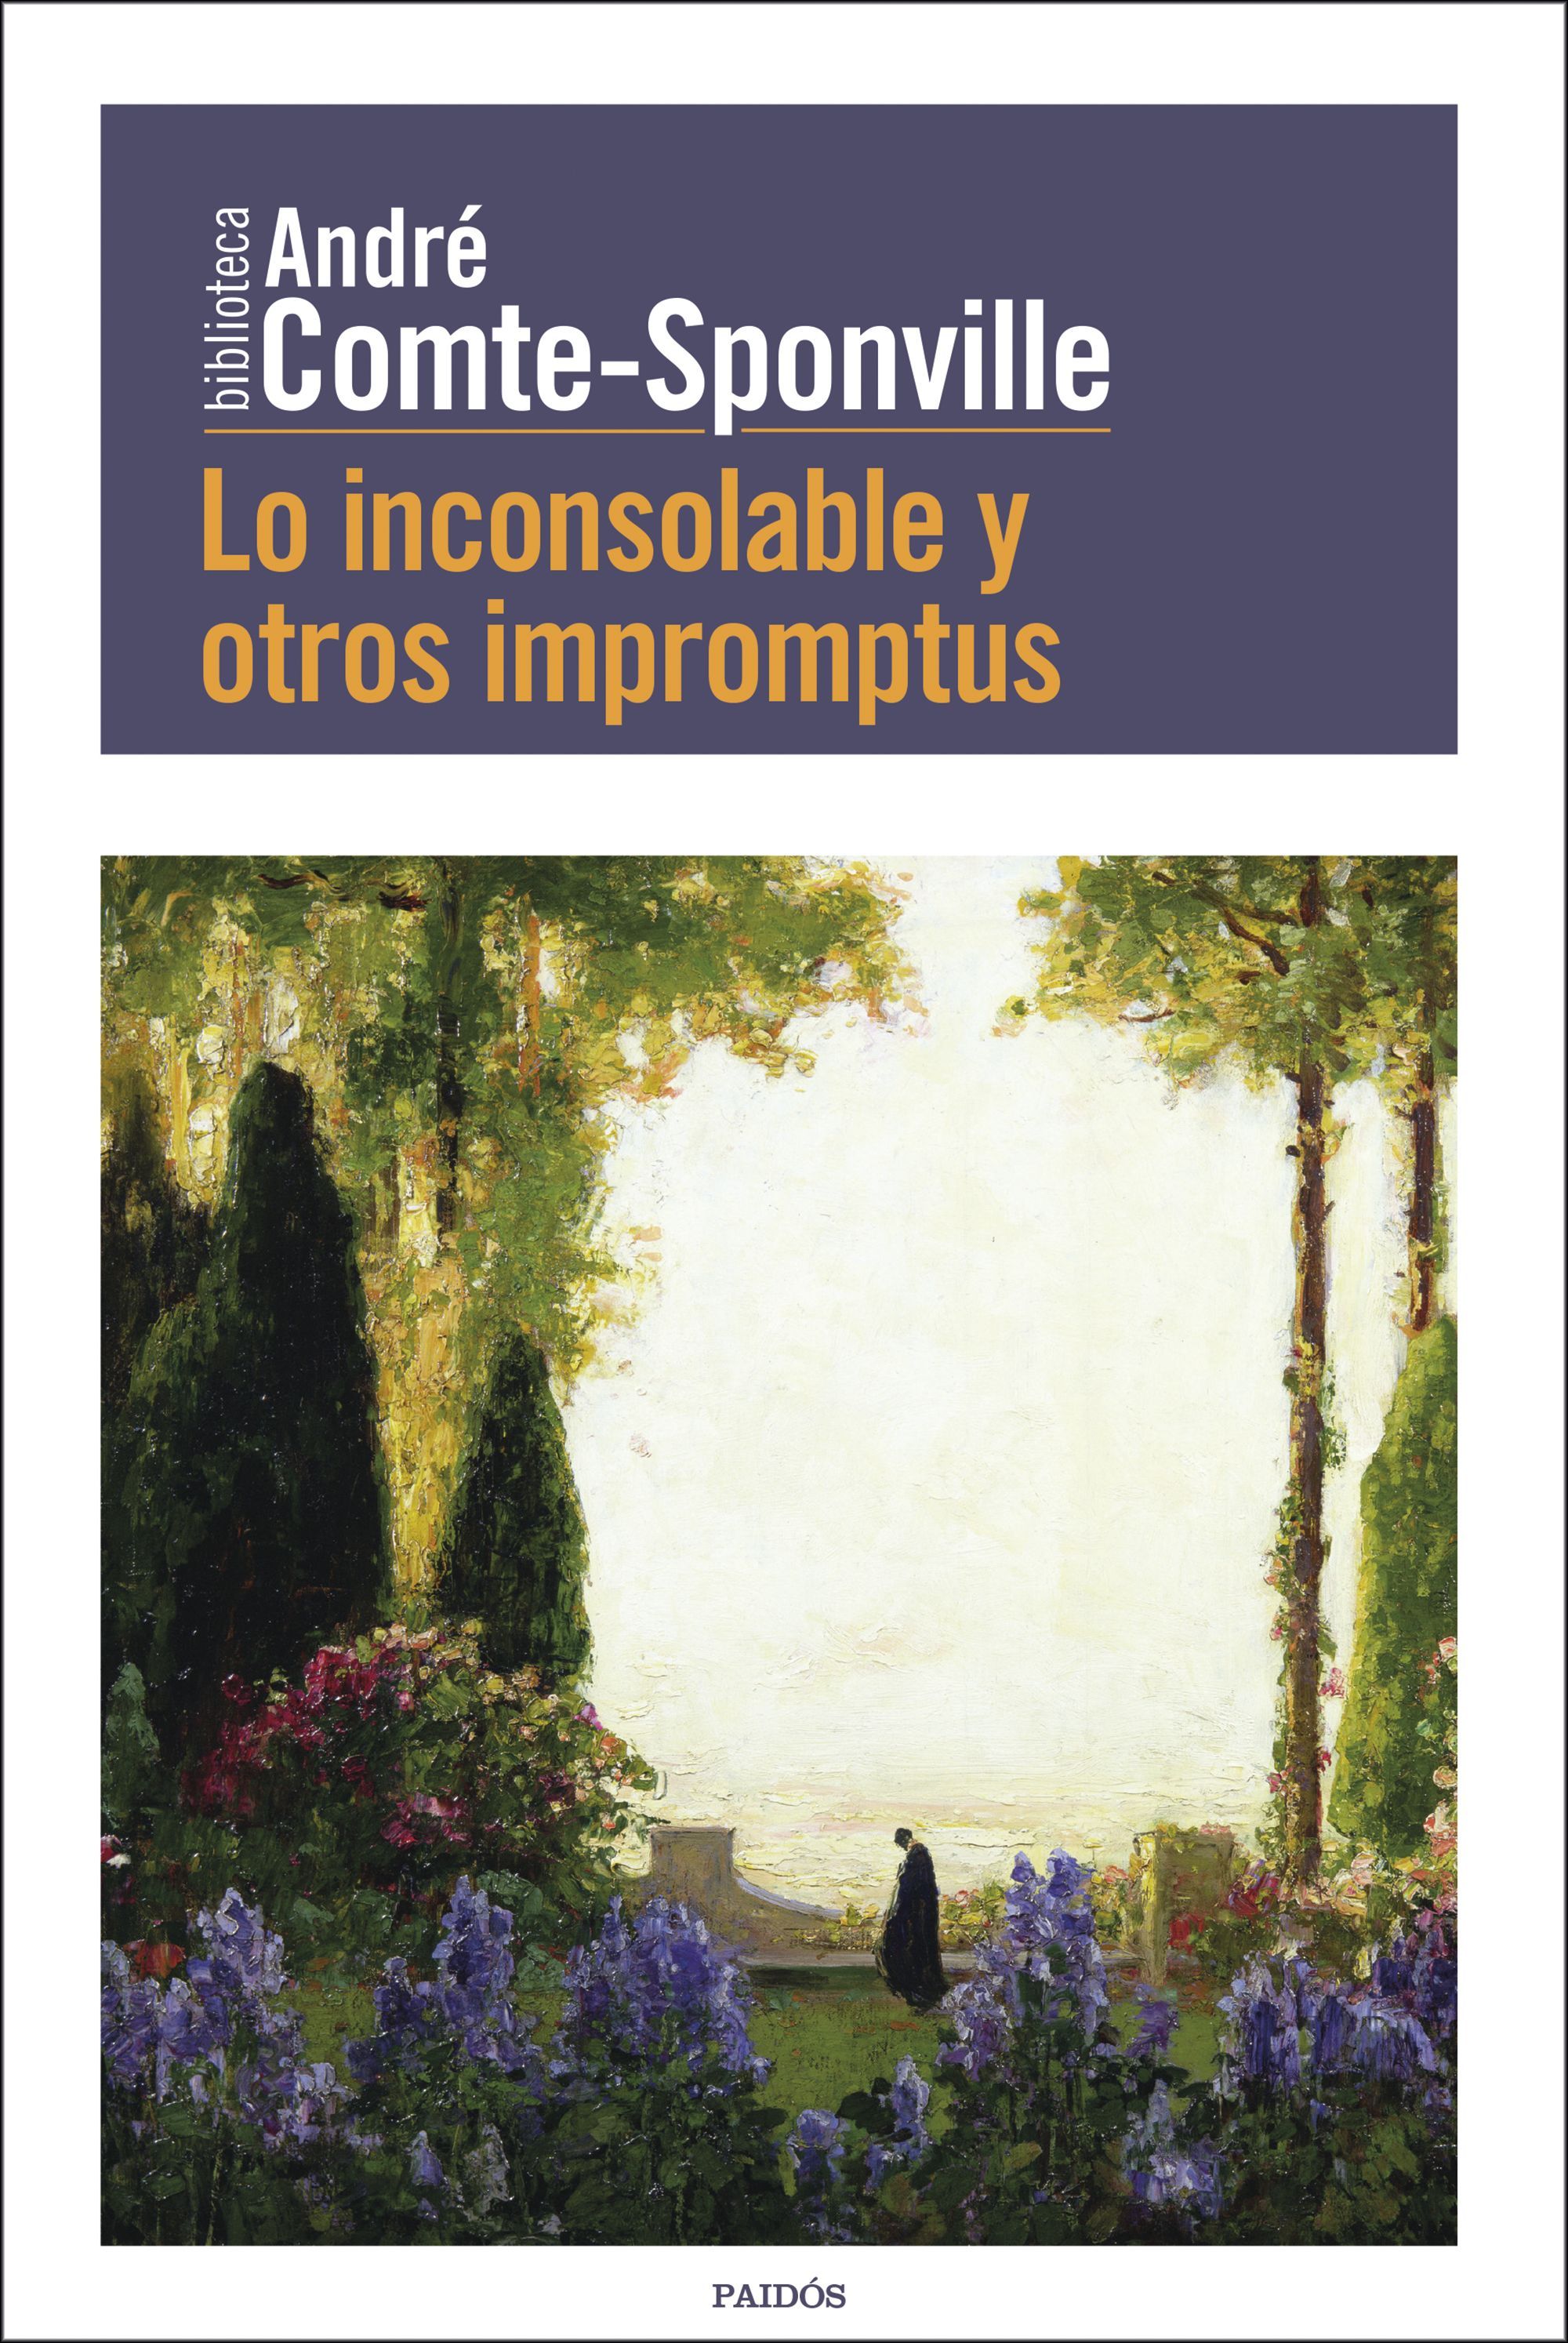 André Comte Sponville retoma sus pensamientos filosóficos en Lo inconsolable y otros impromptus